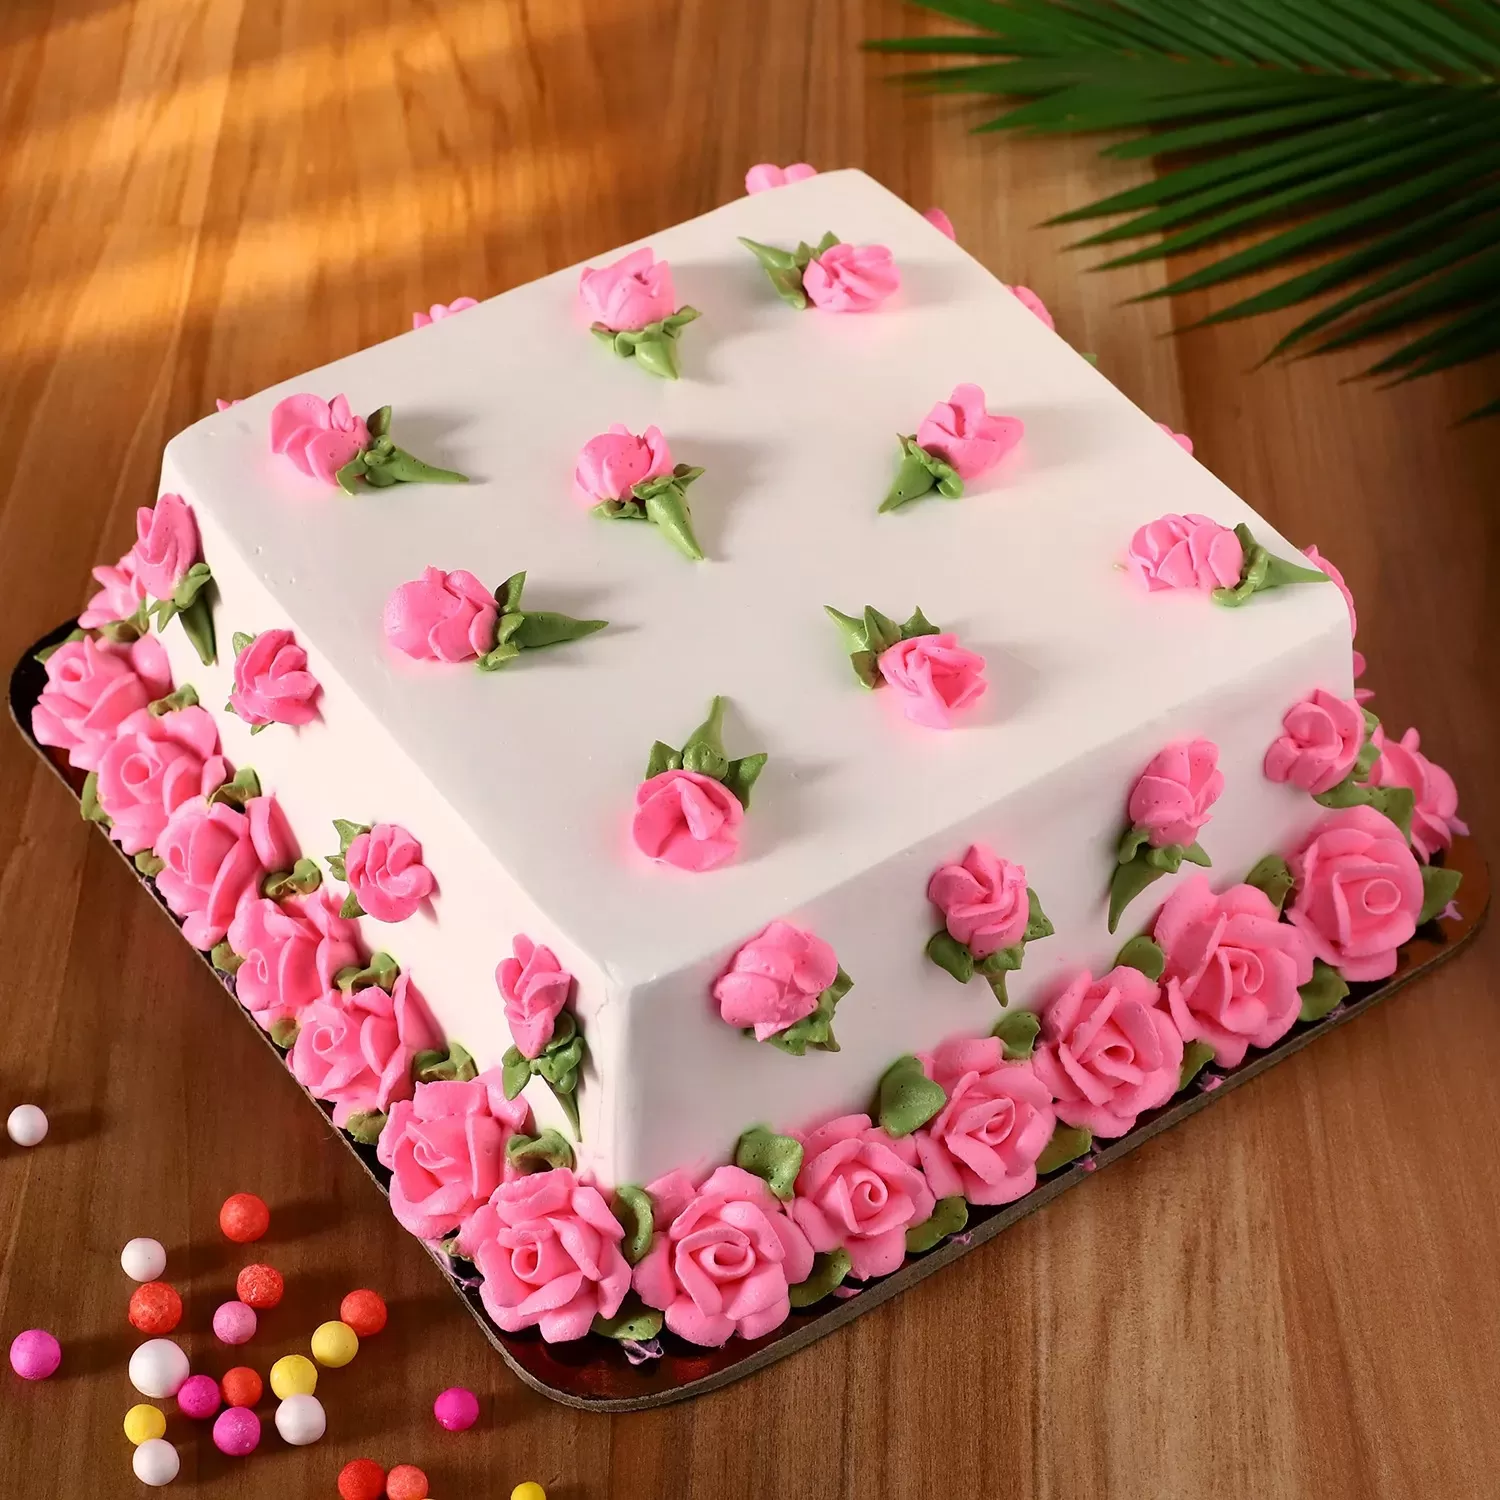 Designer Rosy Chocolate Cake- 1 Kg